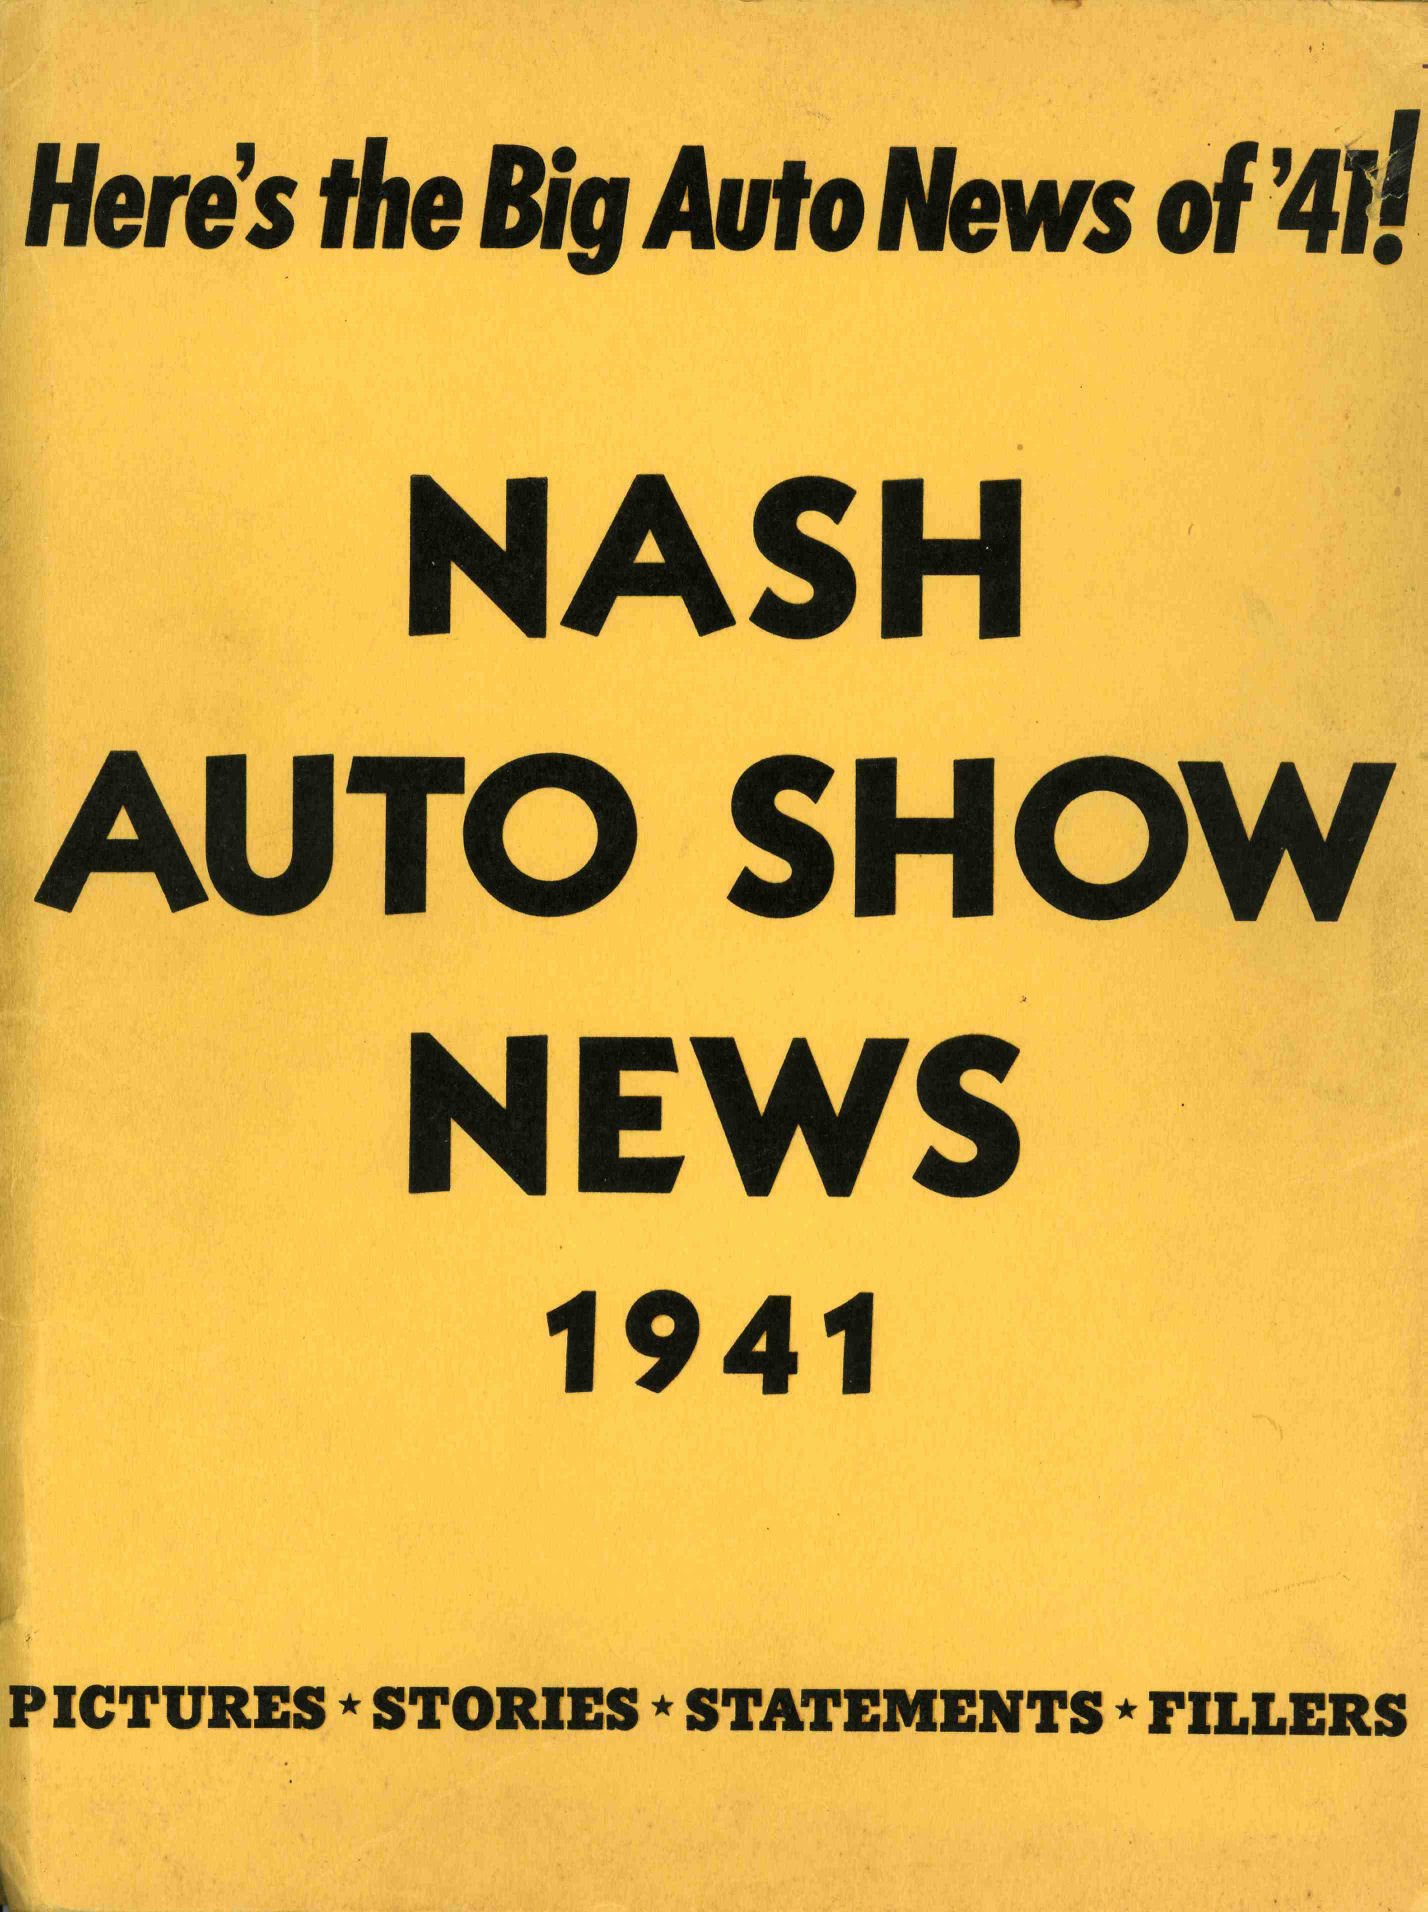 1941_Nash_Press_Kit-0-00c